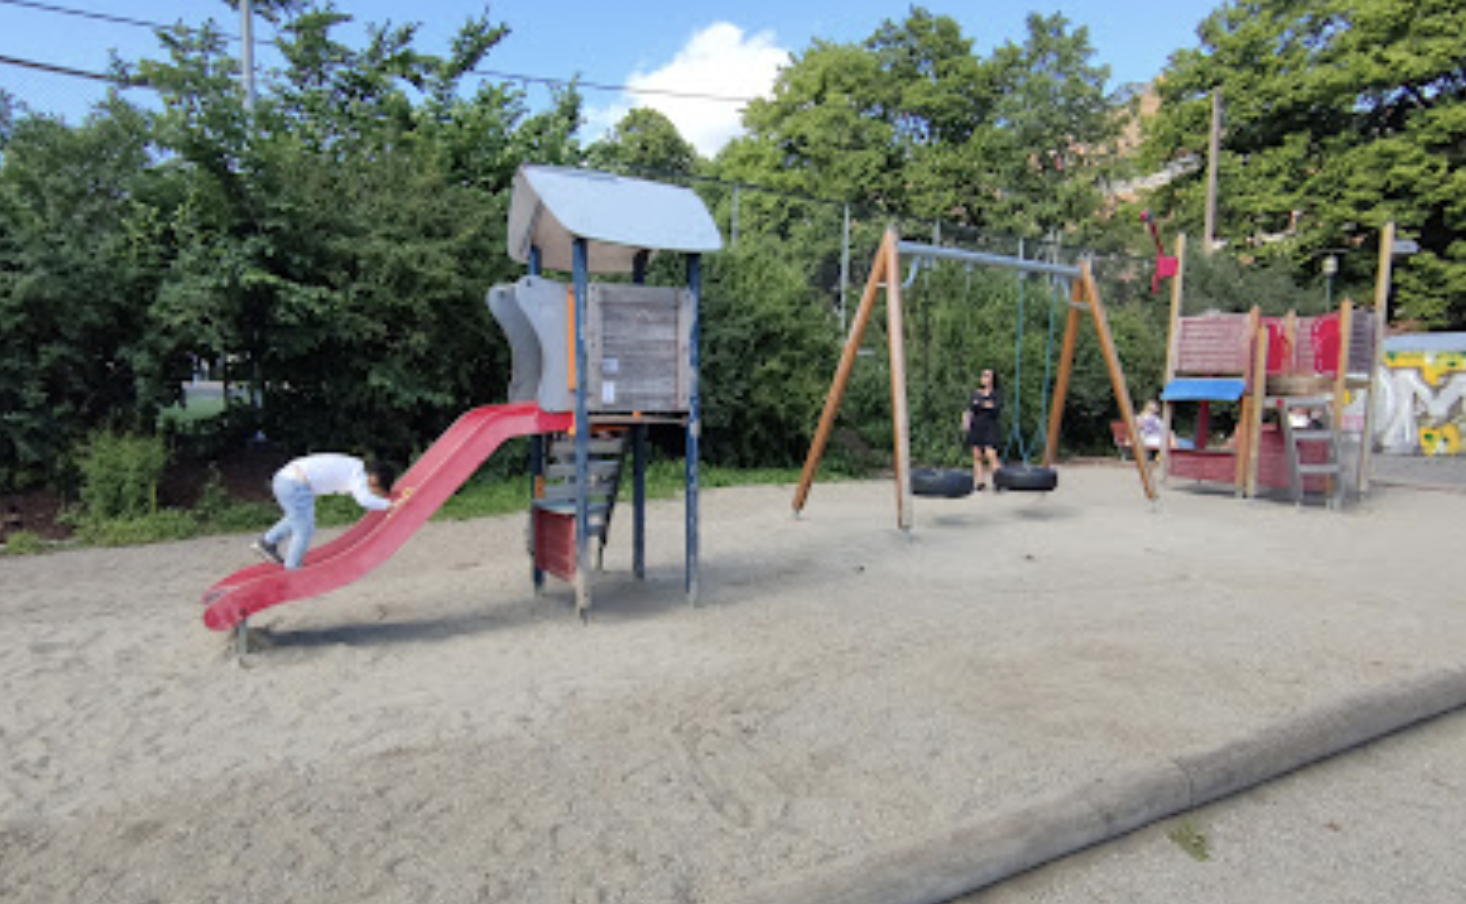 Playground in Grünerhagen park